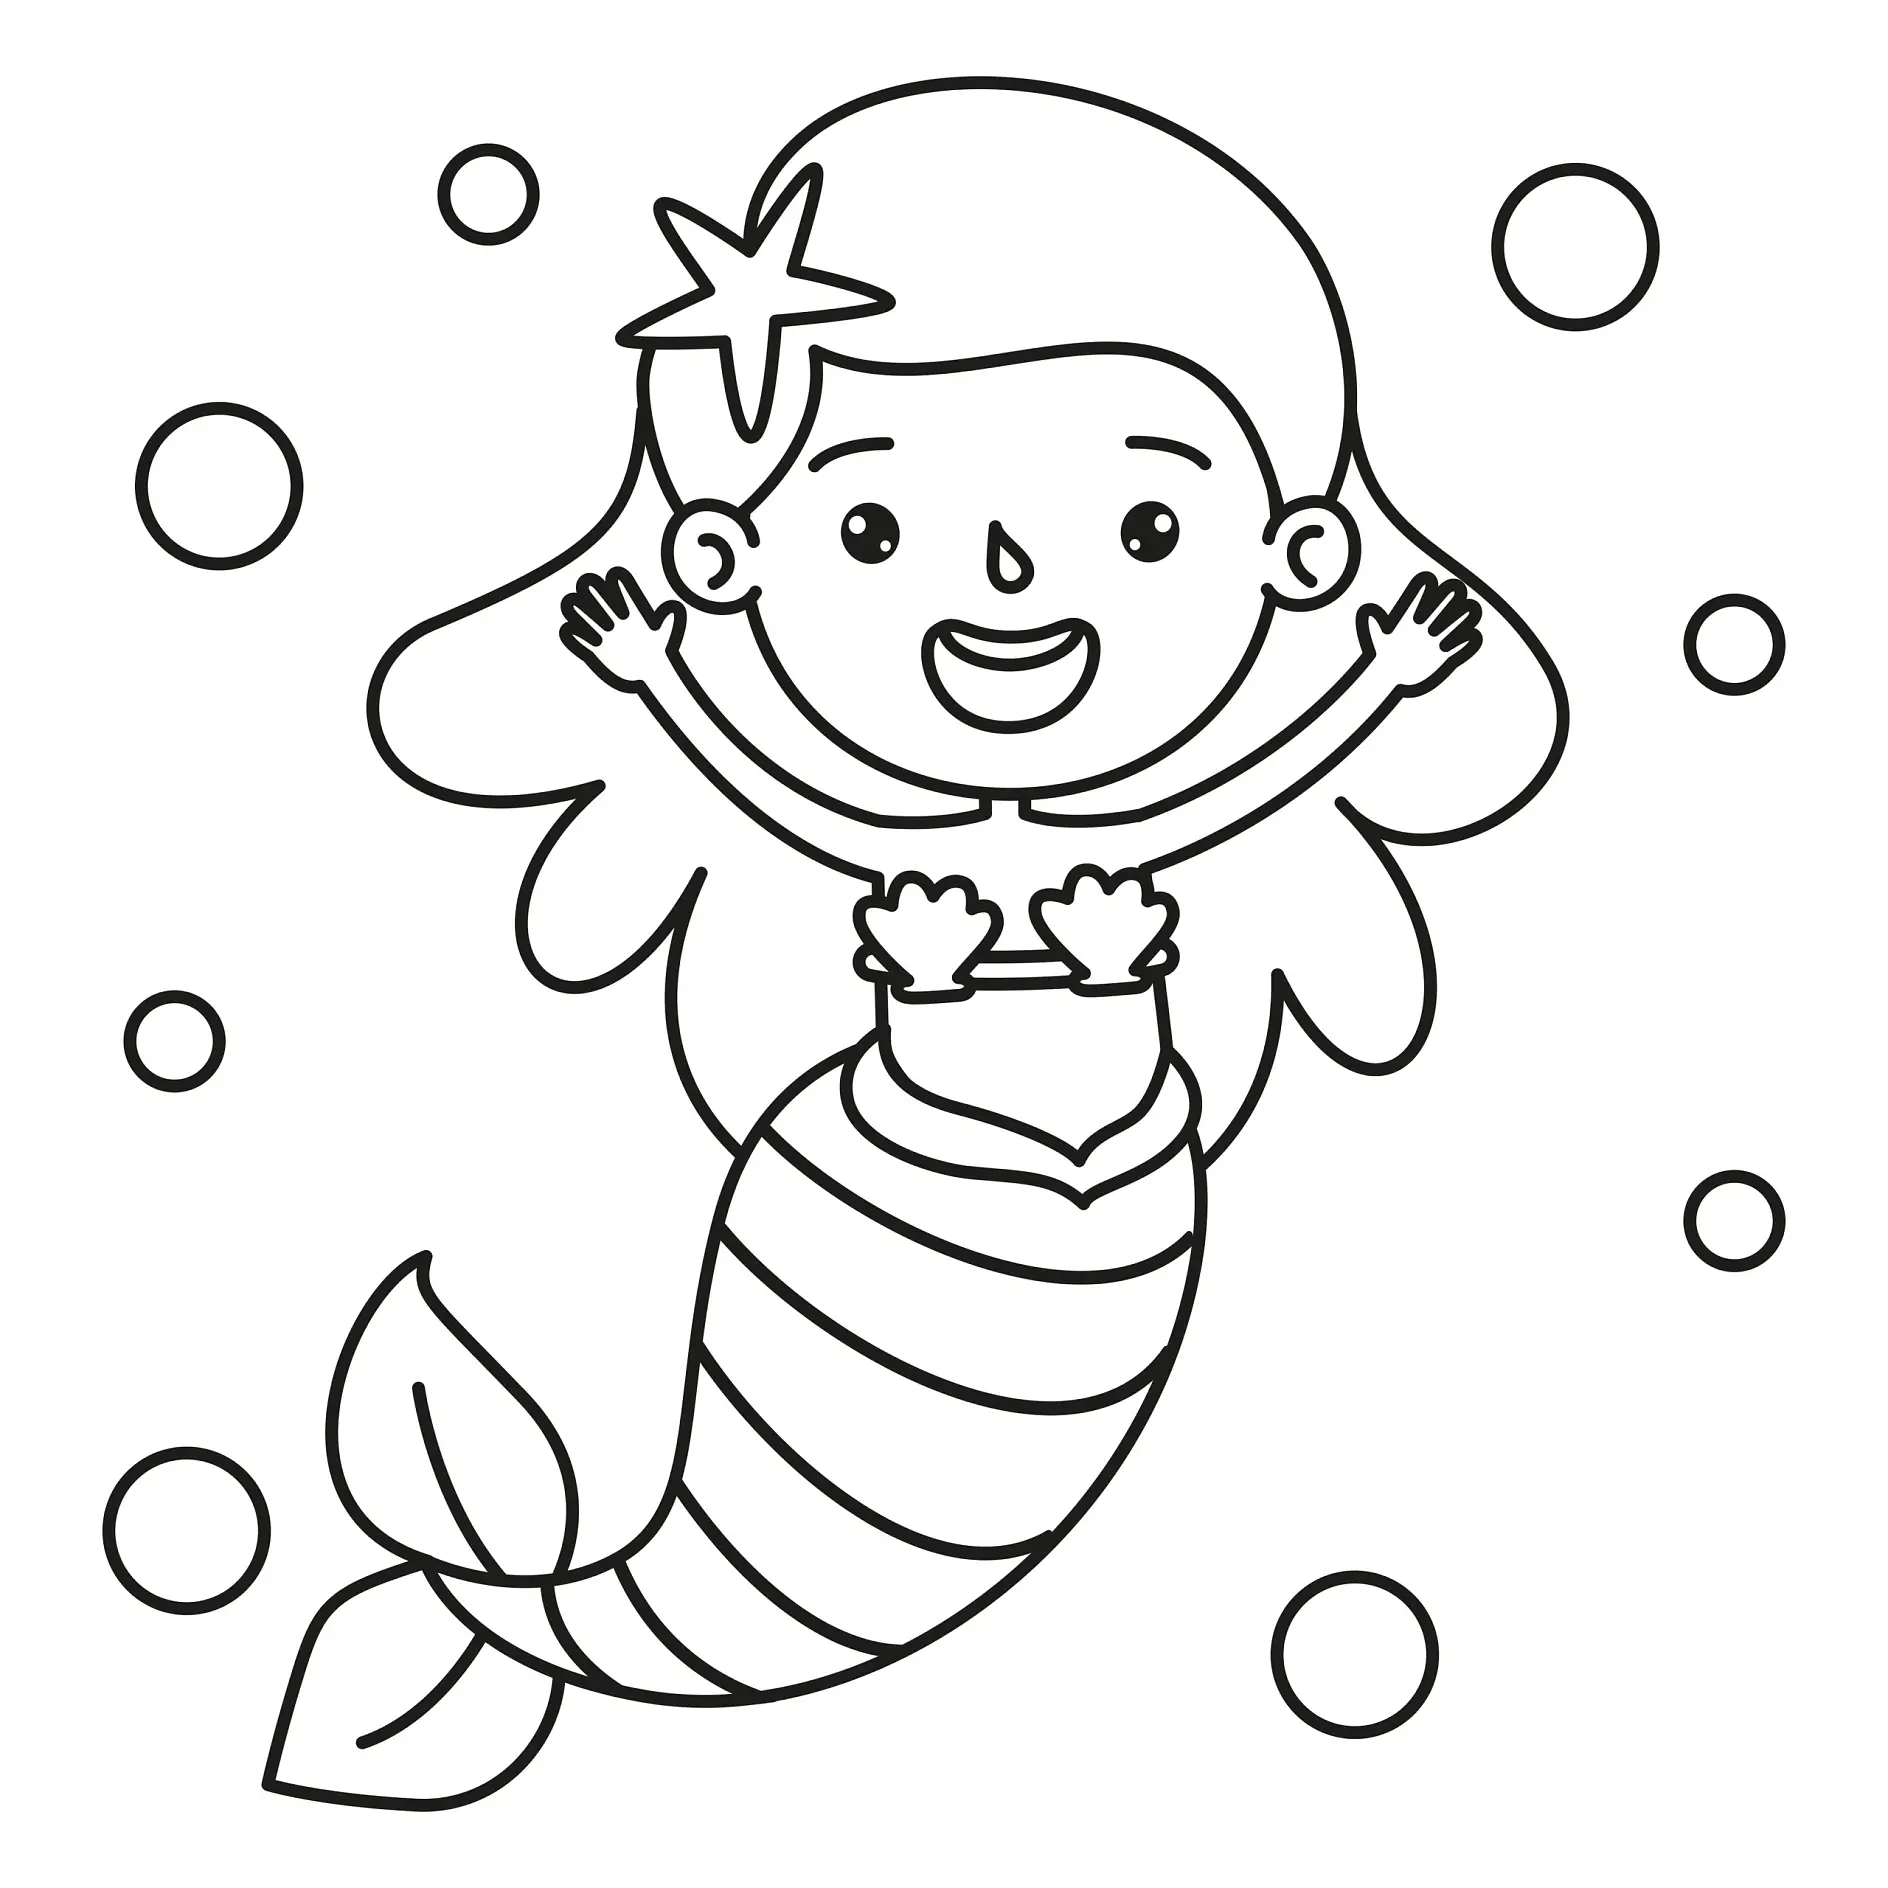 Ausmalbild Meerjungfrau mit Stern im Haar und fröhlichem Gesicht